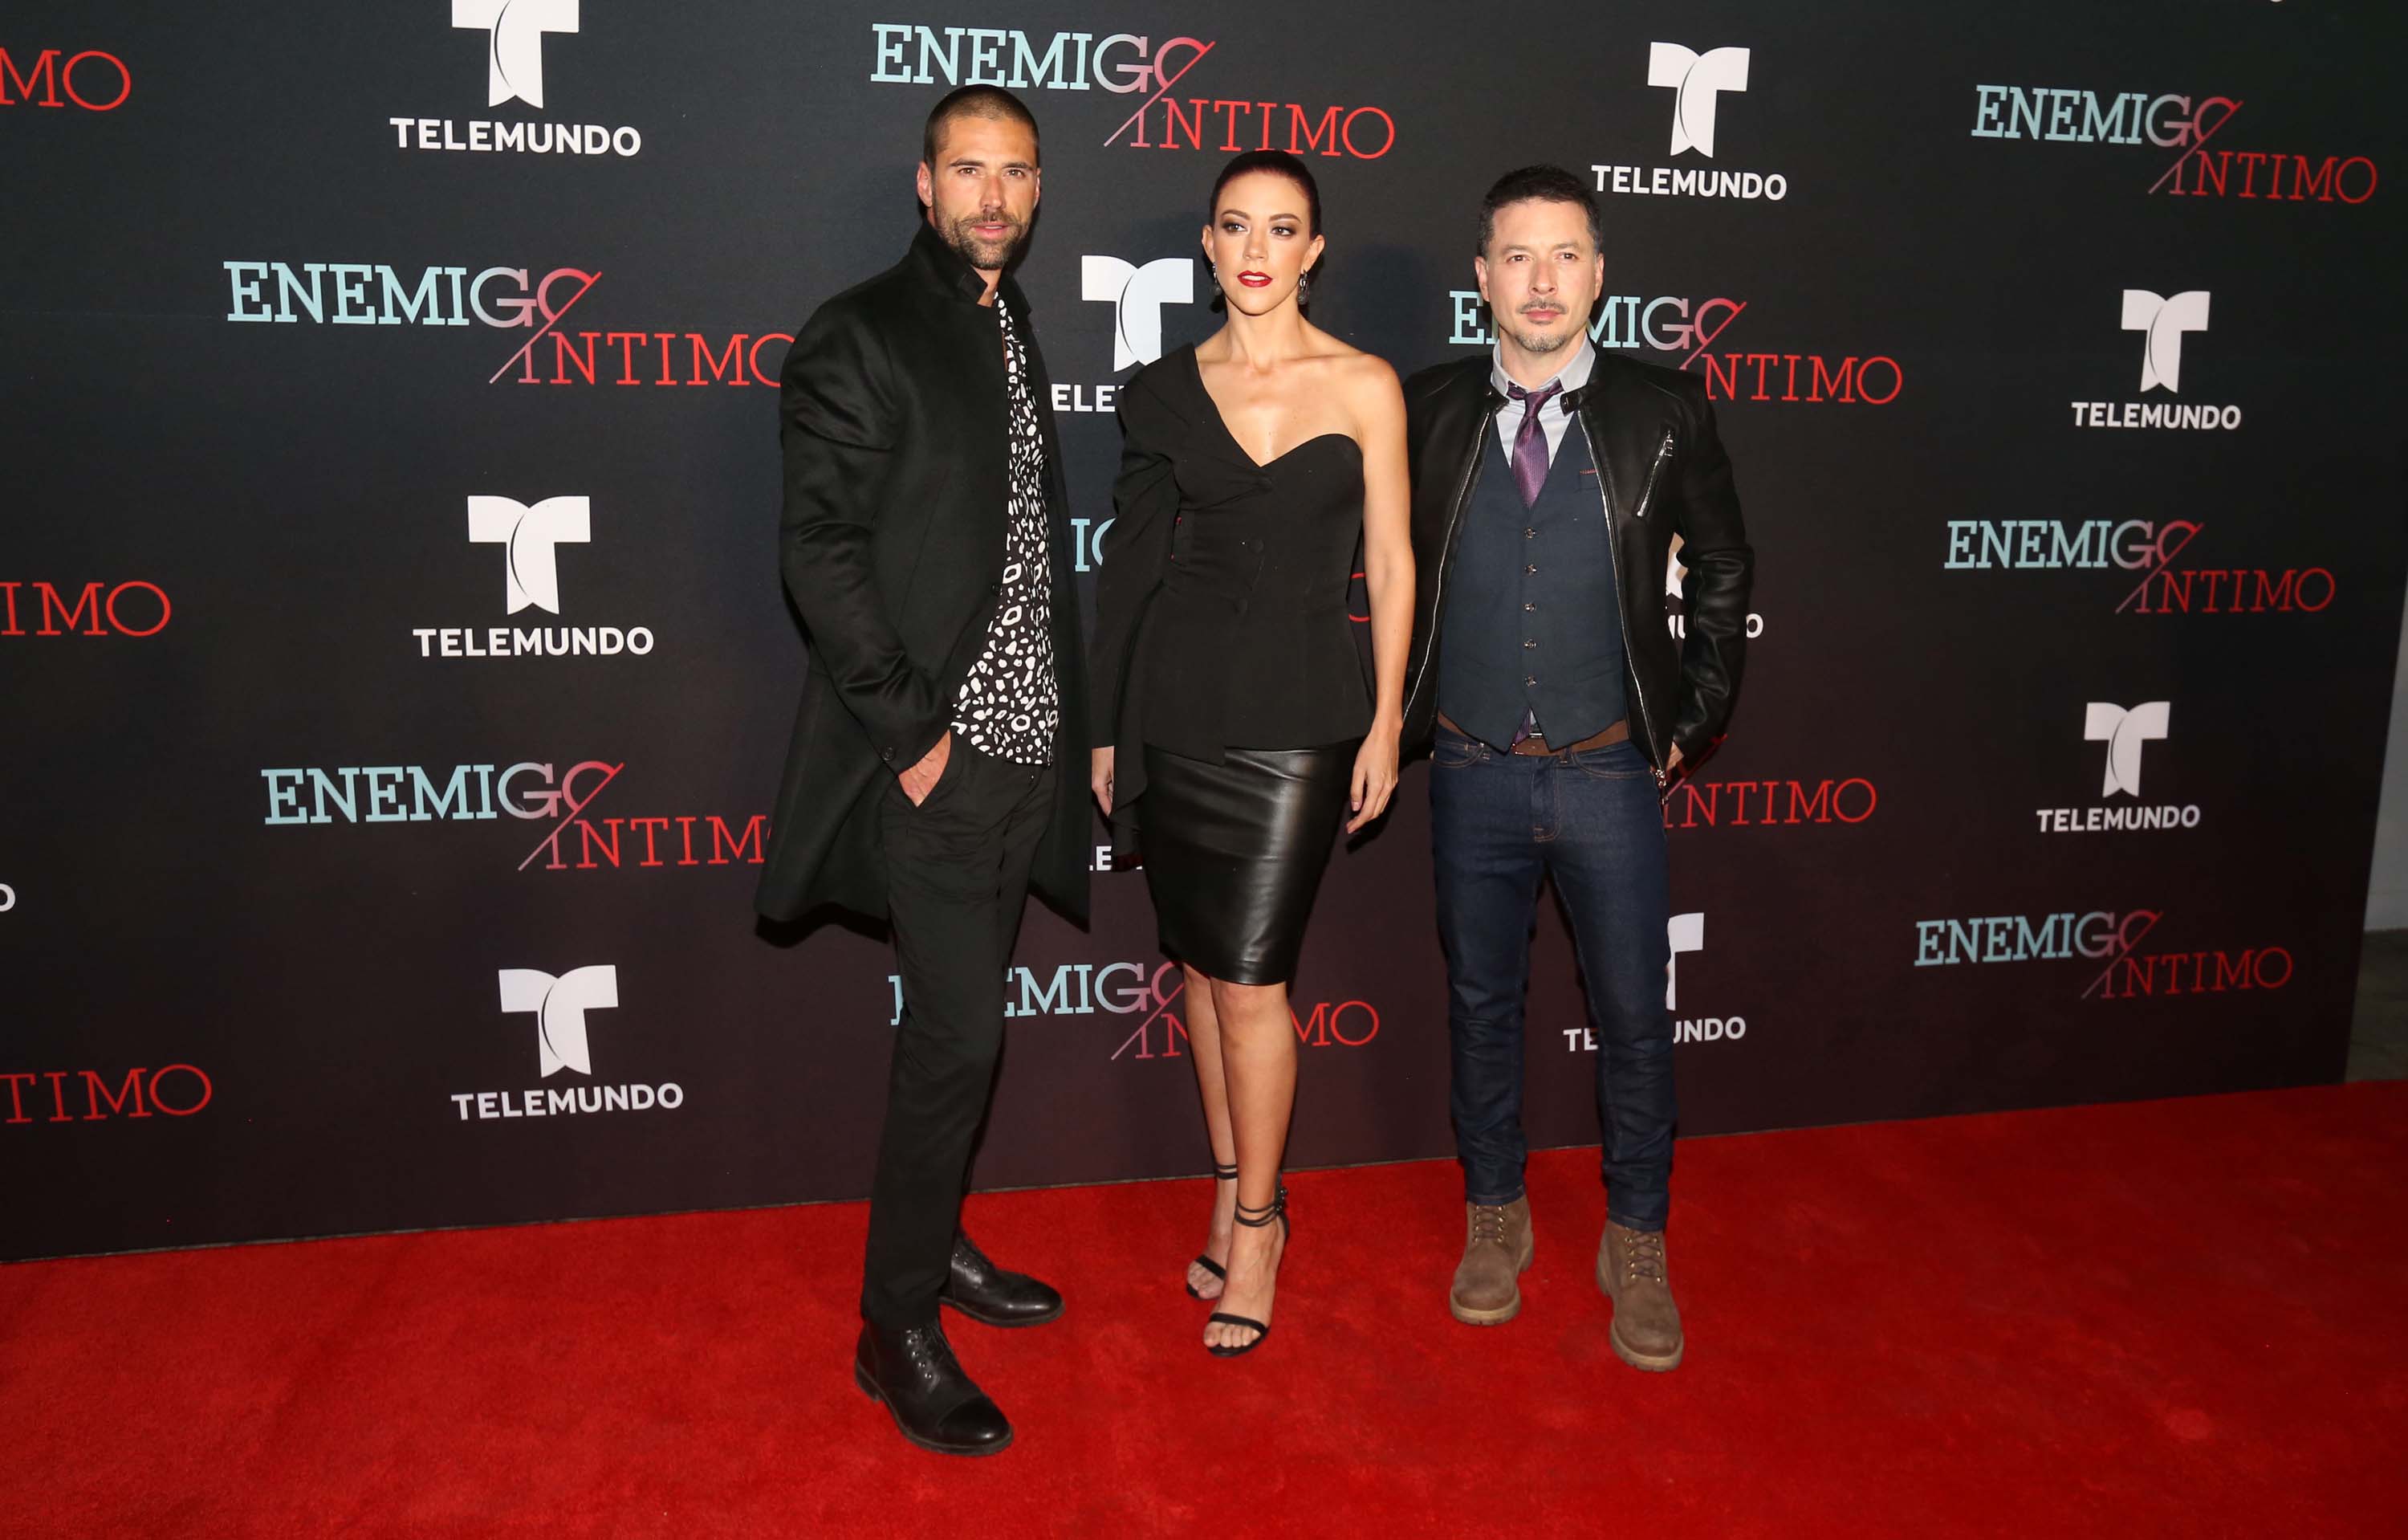 Fernanda Castillo attends Enemigo Intimo TV show premiere